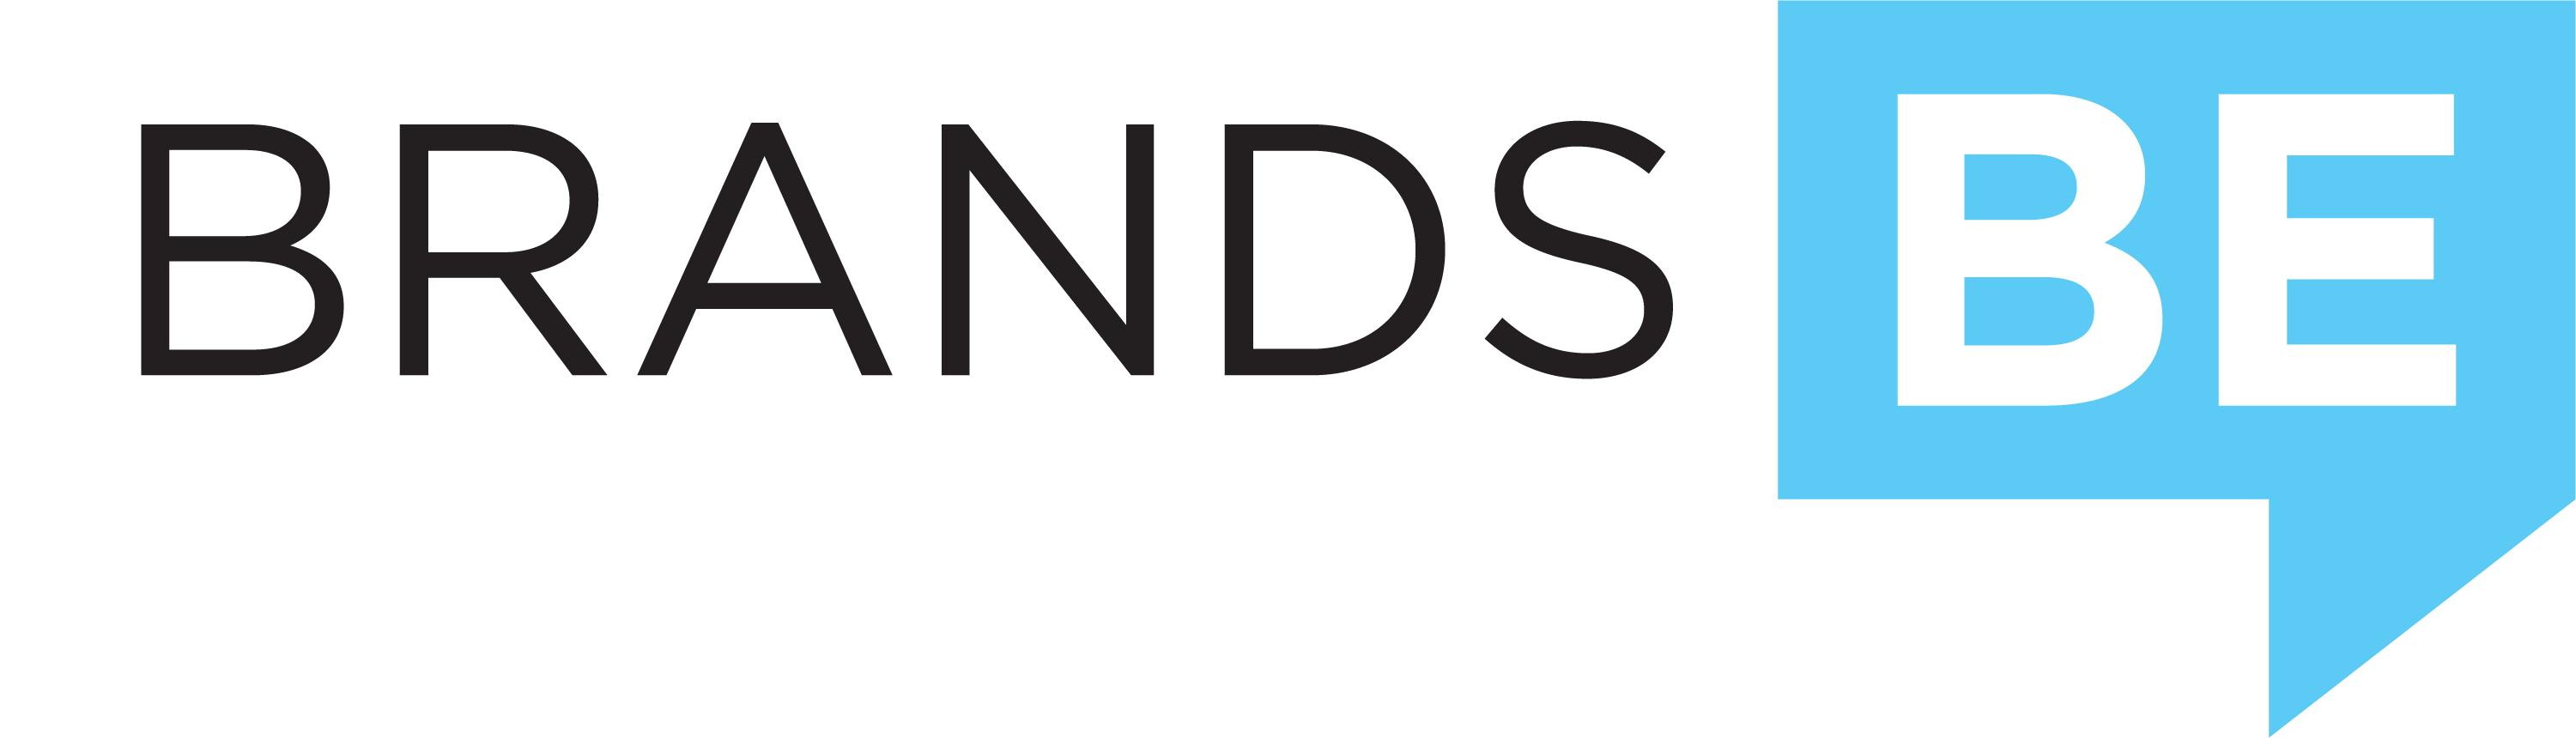 BrandsBe Media Reverse Color Logo